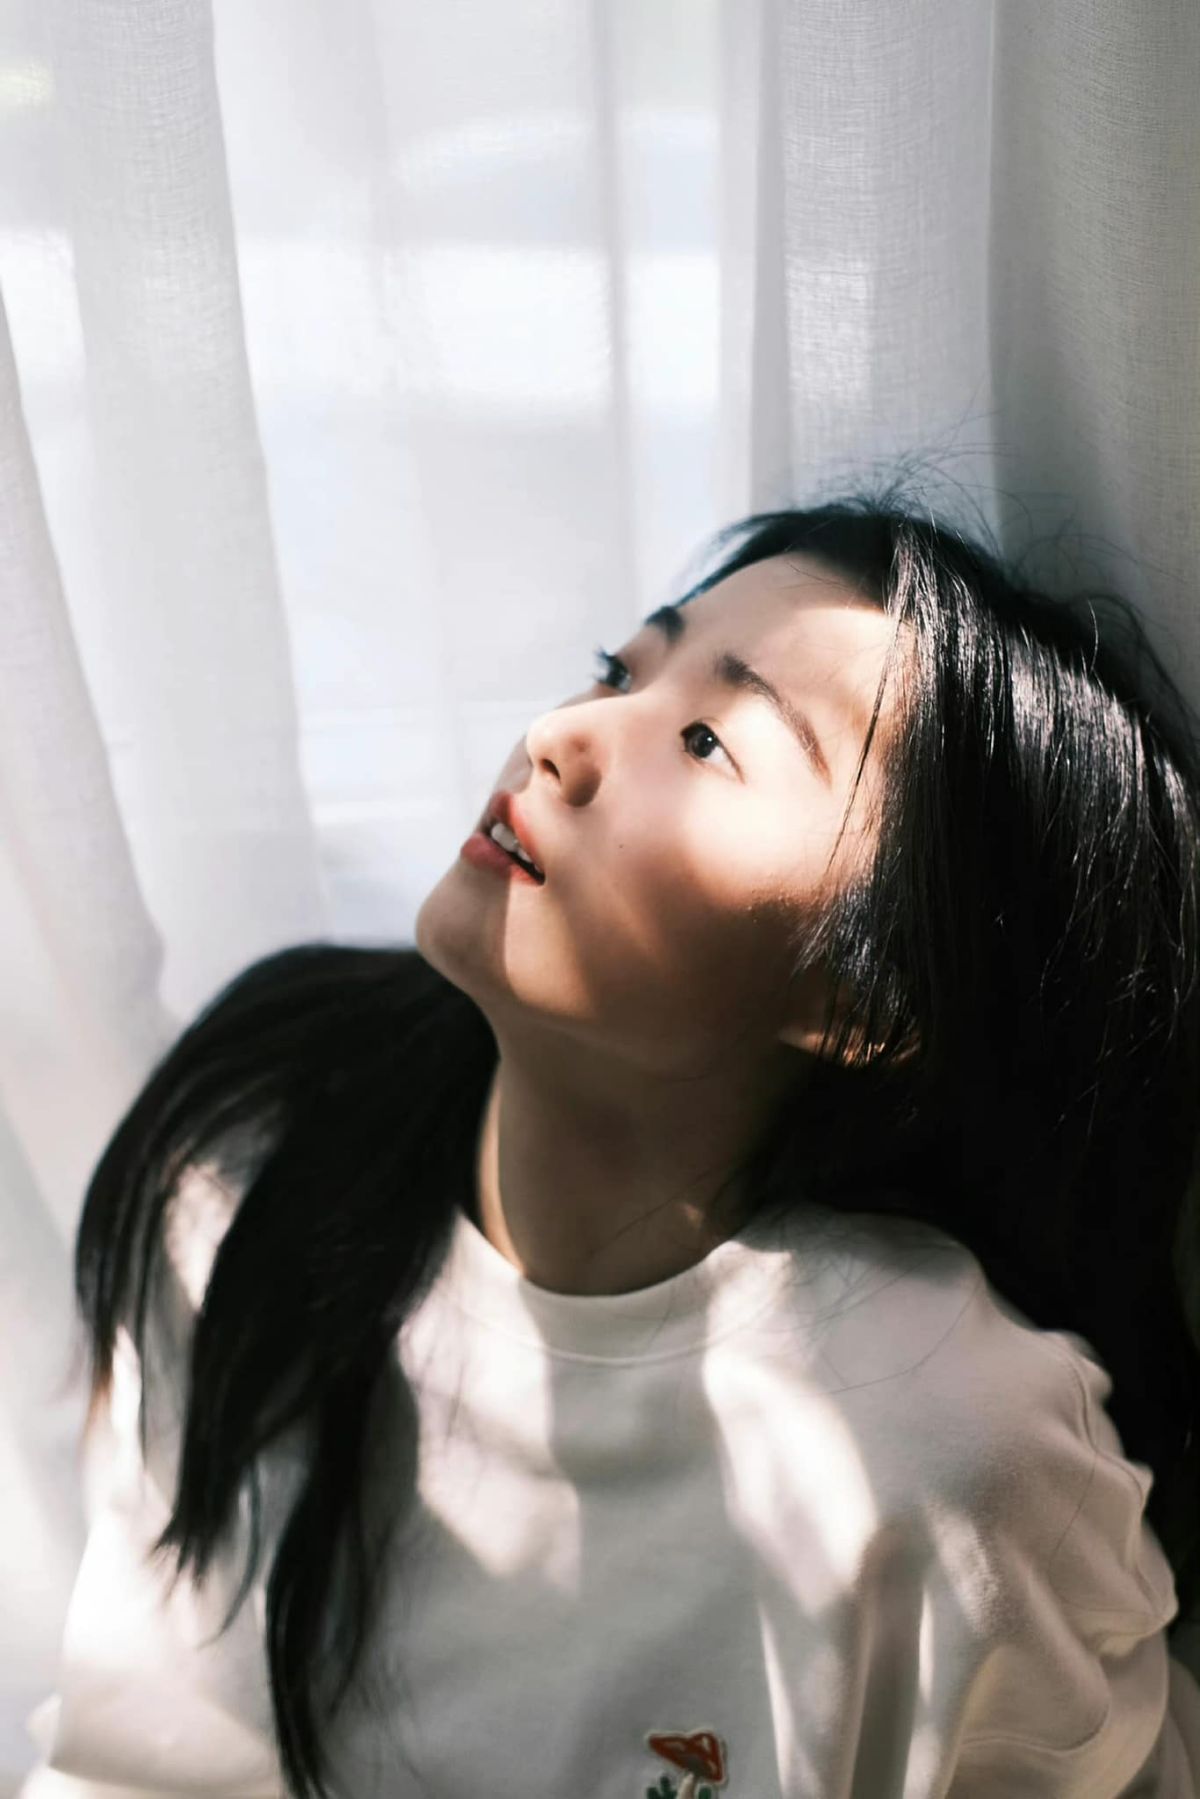 Năm 2019, cô nàng tham gia chương trình Phái diễn xuất do Youku sản xuất, chính thức gia nhập giới giải trí